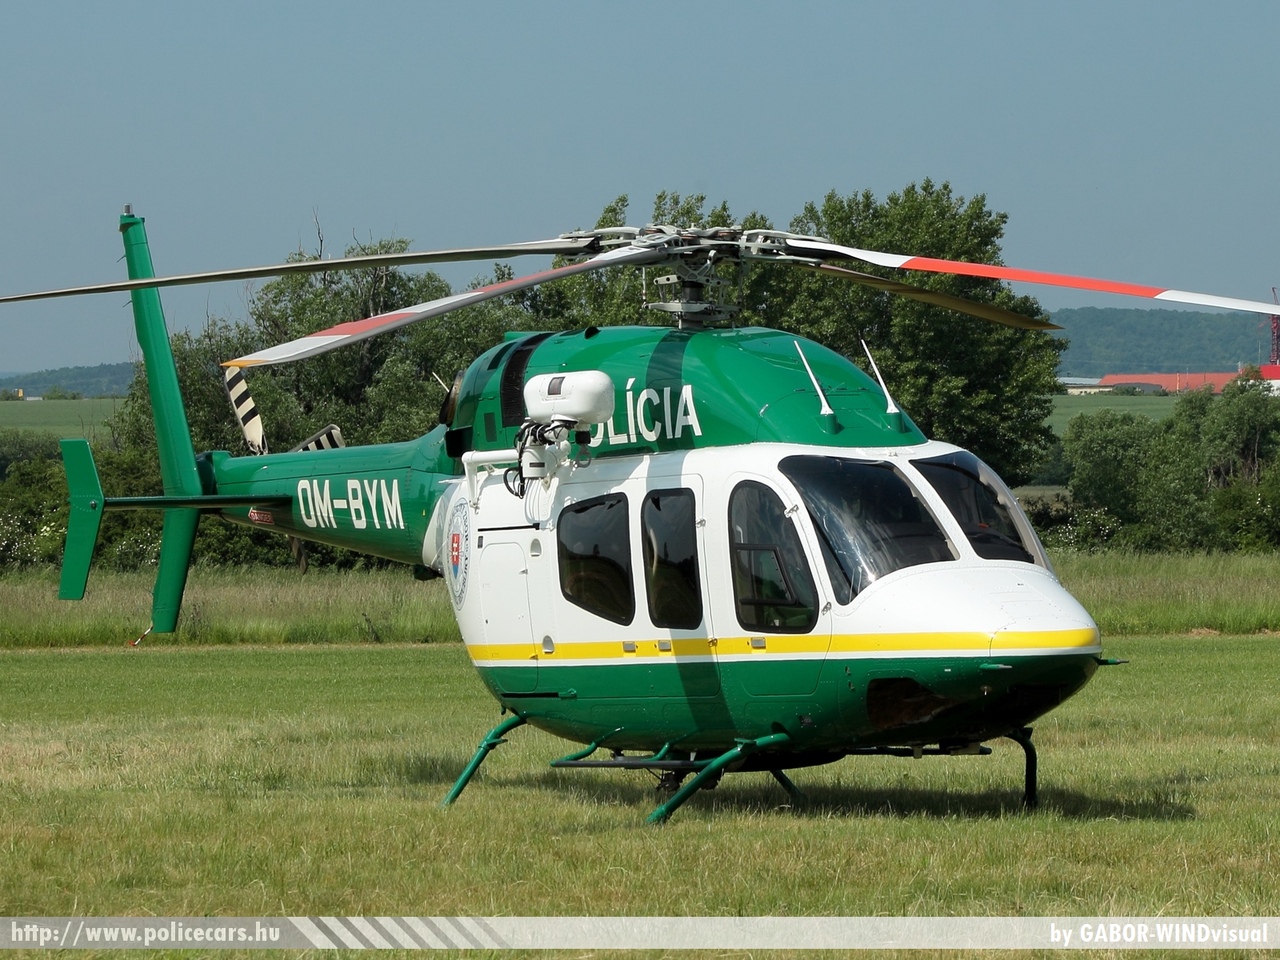 Bell 429, fotó: GABOR-WINDvisual
Keywords: szlovákia helikopter rendőrség 